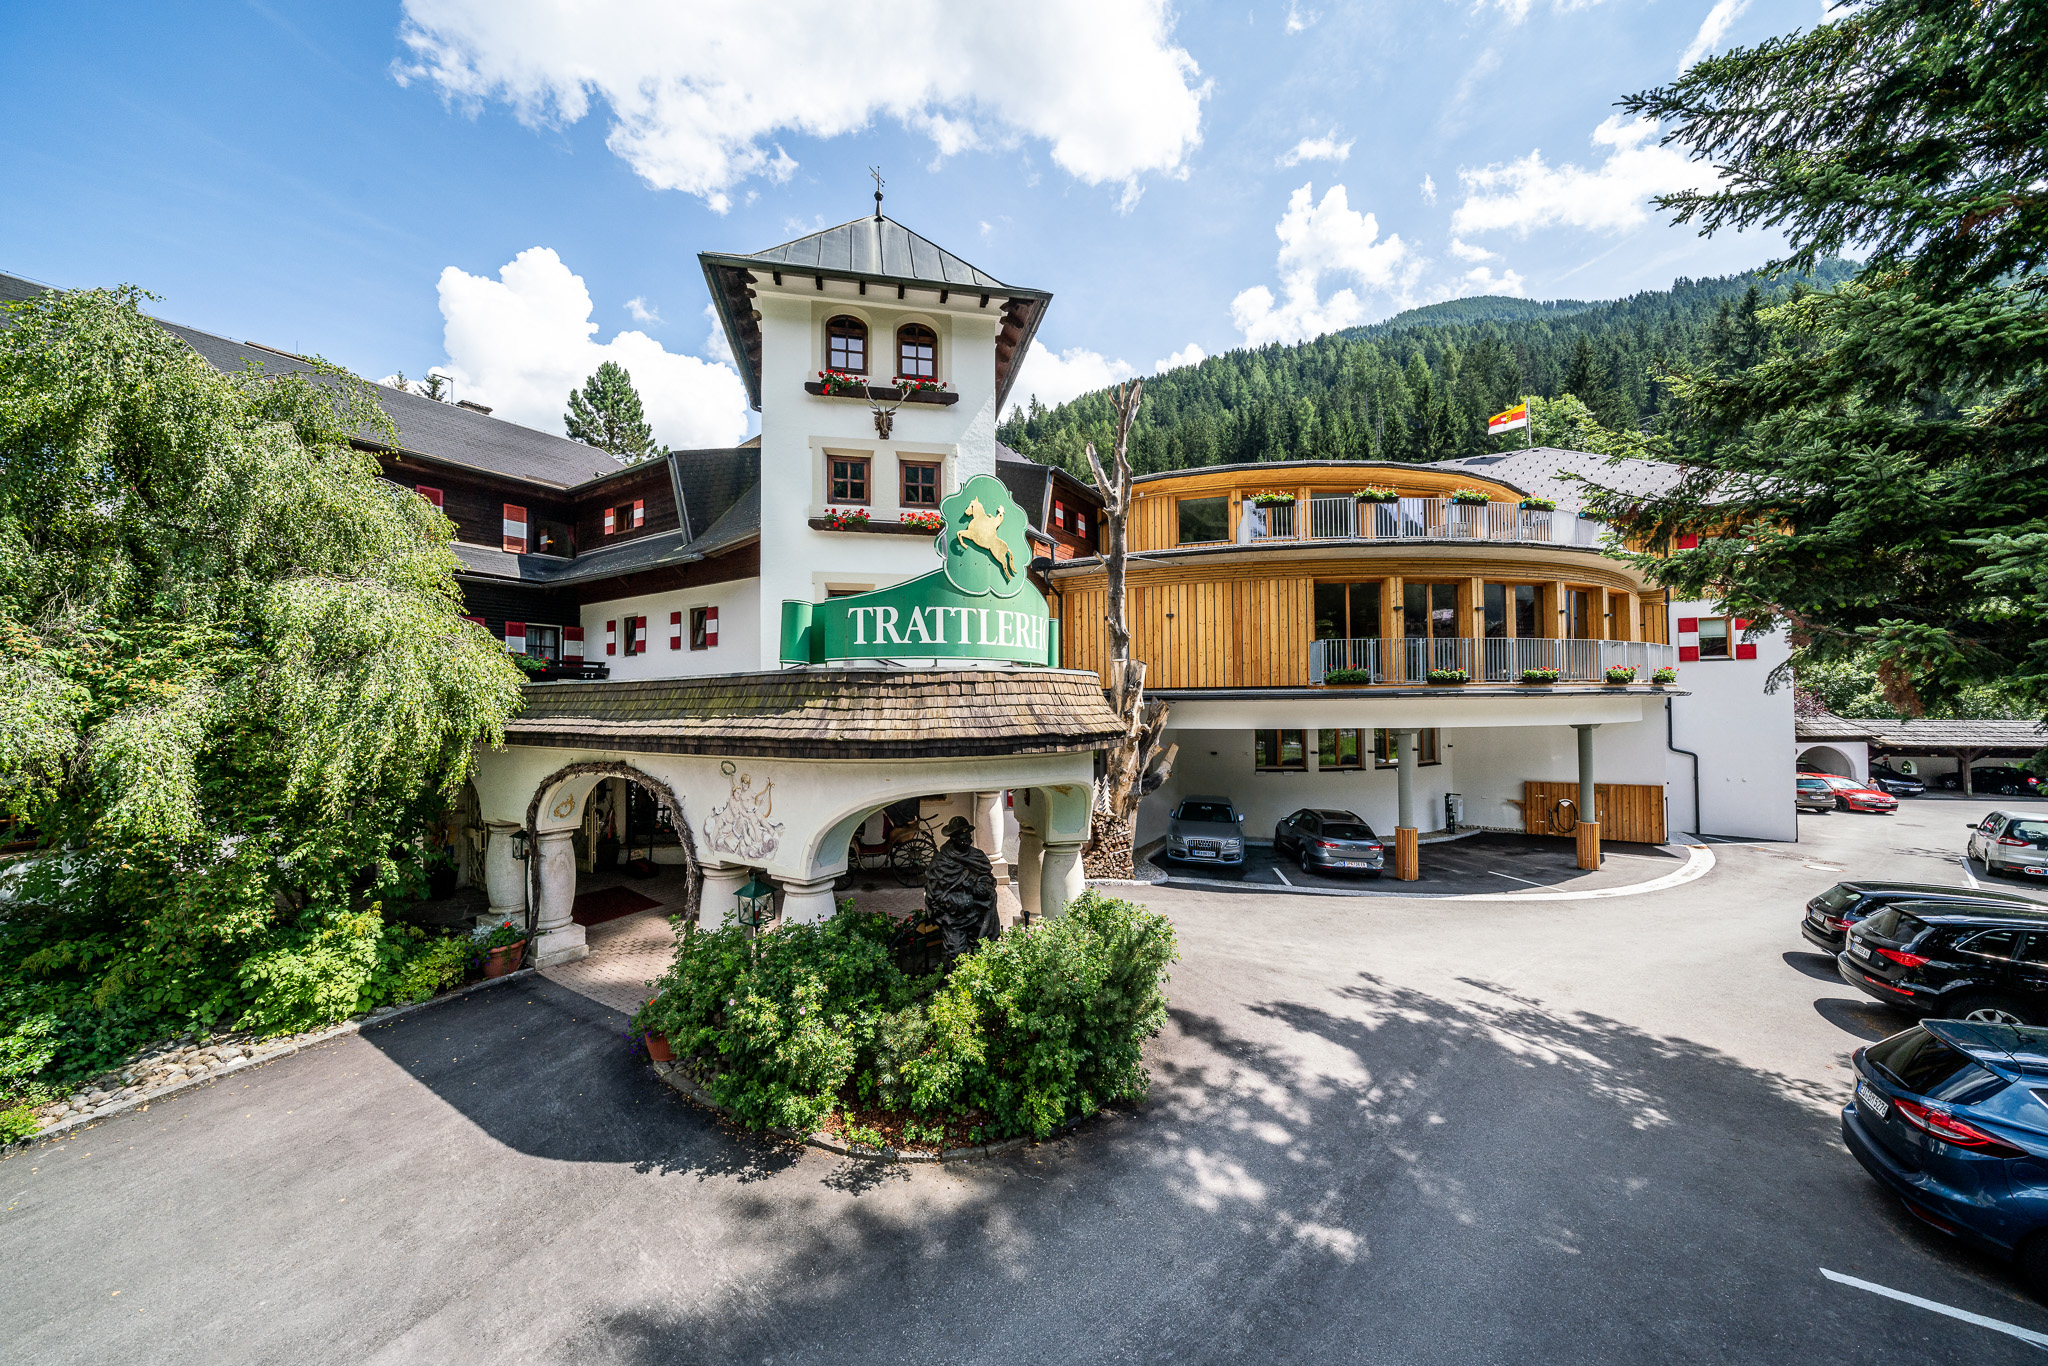 625 € Wertgutschein für das Hotel GUT Trattlerhof